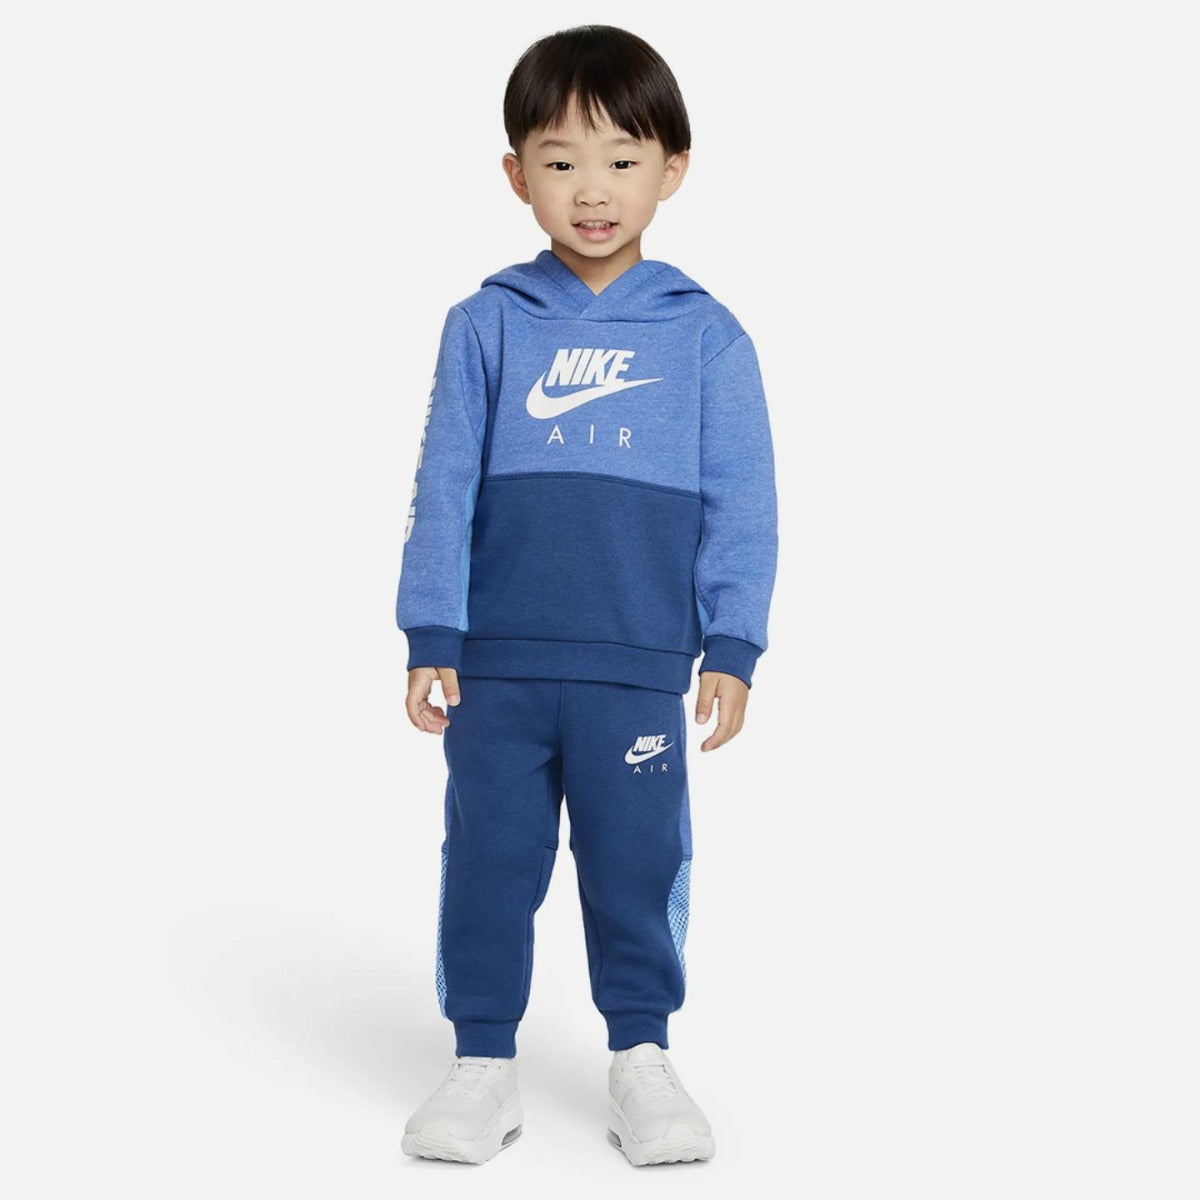 Completo tuta Nike Air Baby - blu/bianco